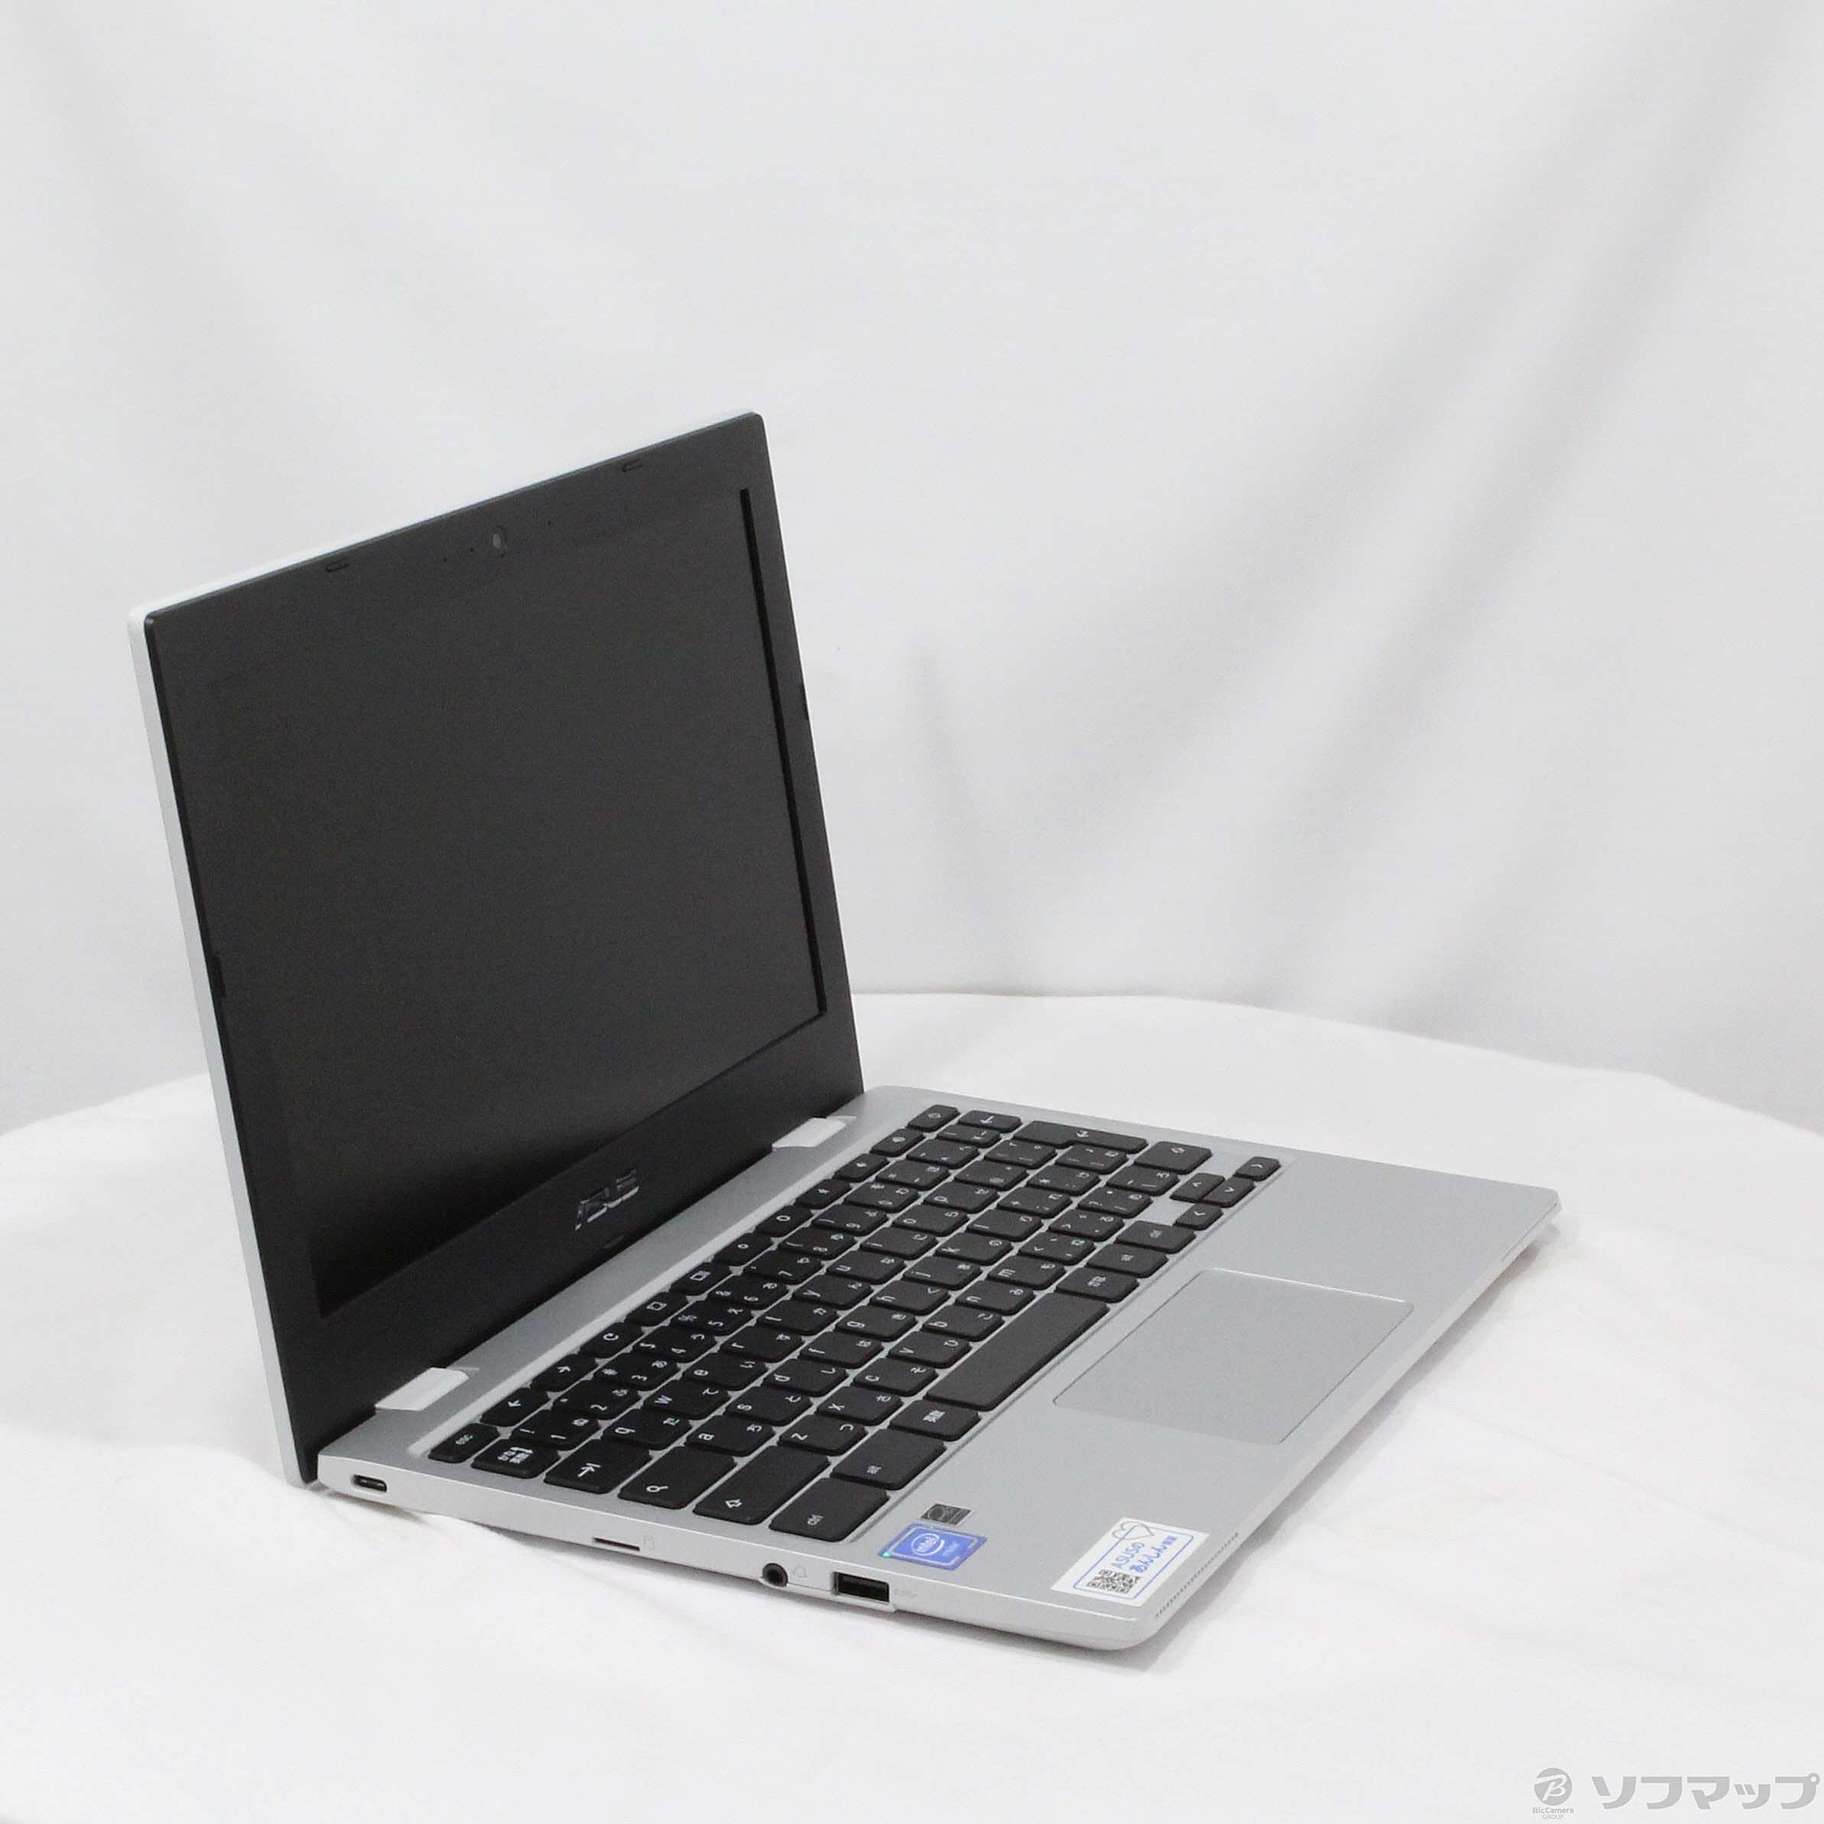 展示品] Chromebook CX1 CX1101CMA-GJ0019透明银|no邮购是Sofmap[sofmap]